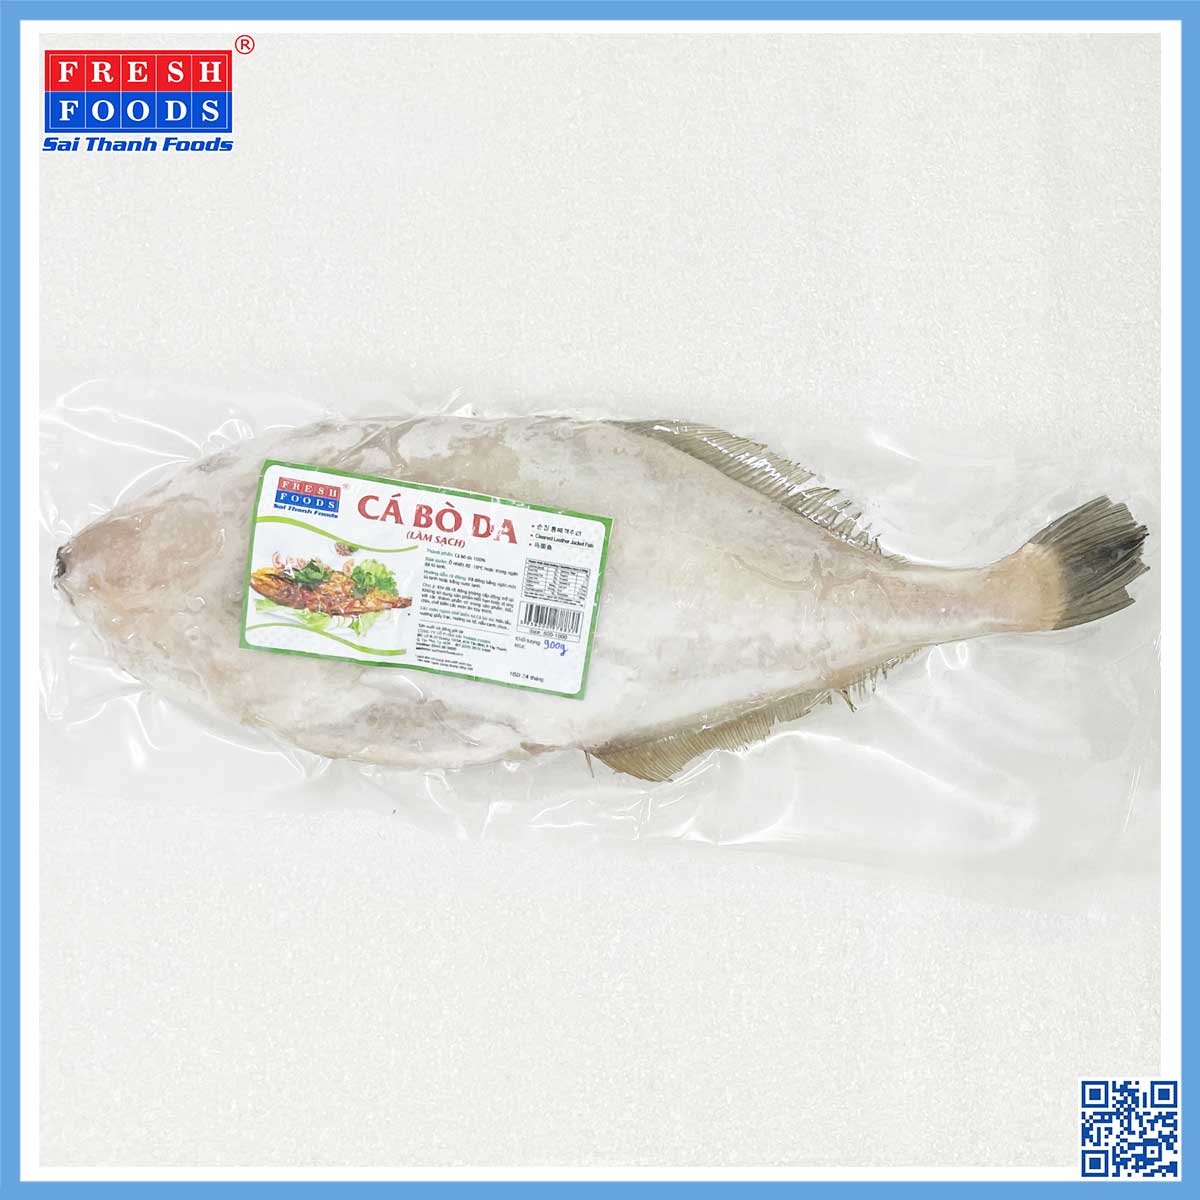 Cá bò da - Thủy Hải Sản Sài Thành Foods - Công Ty Cổ Phần Sài Thành Foods